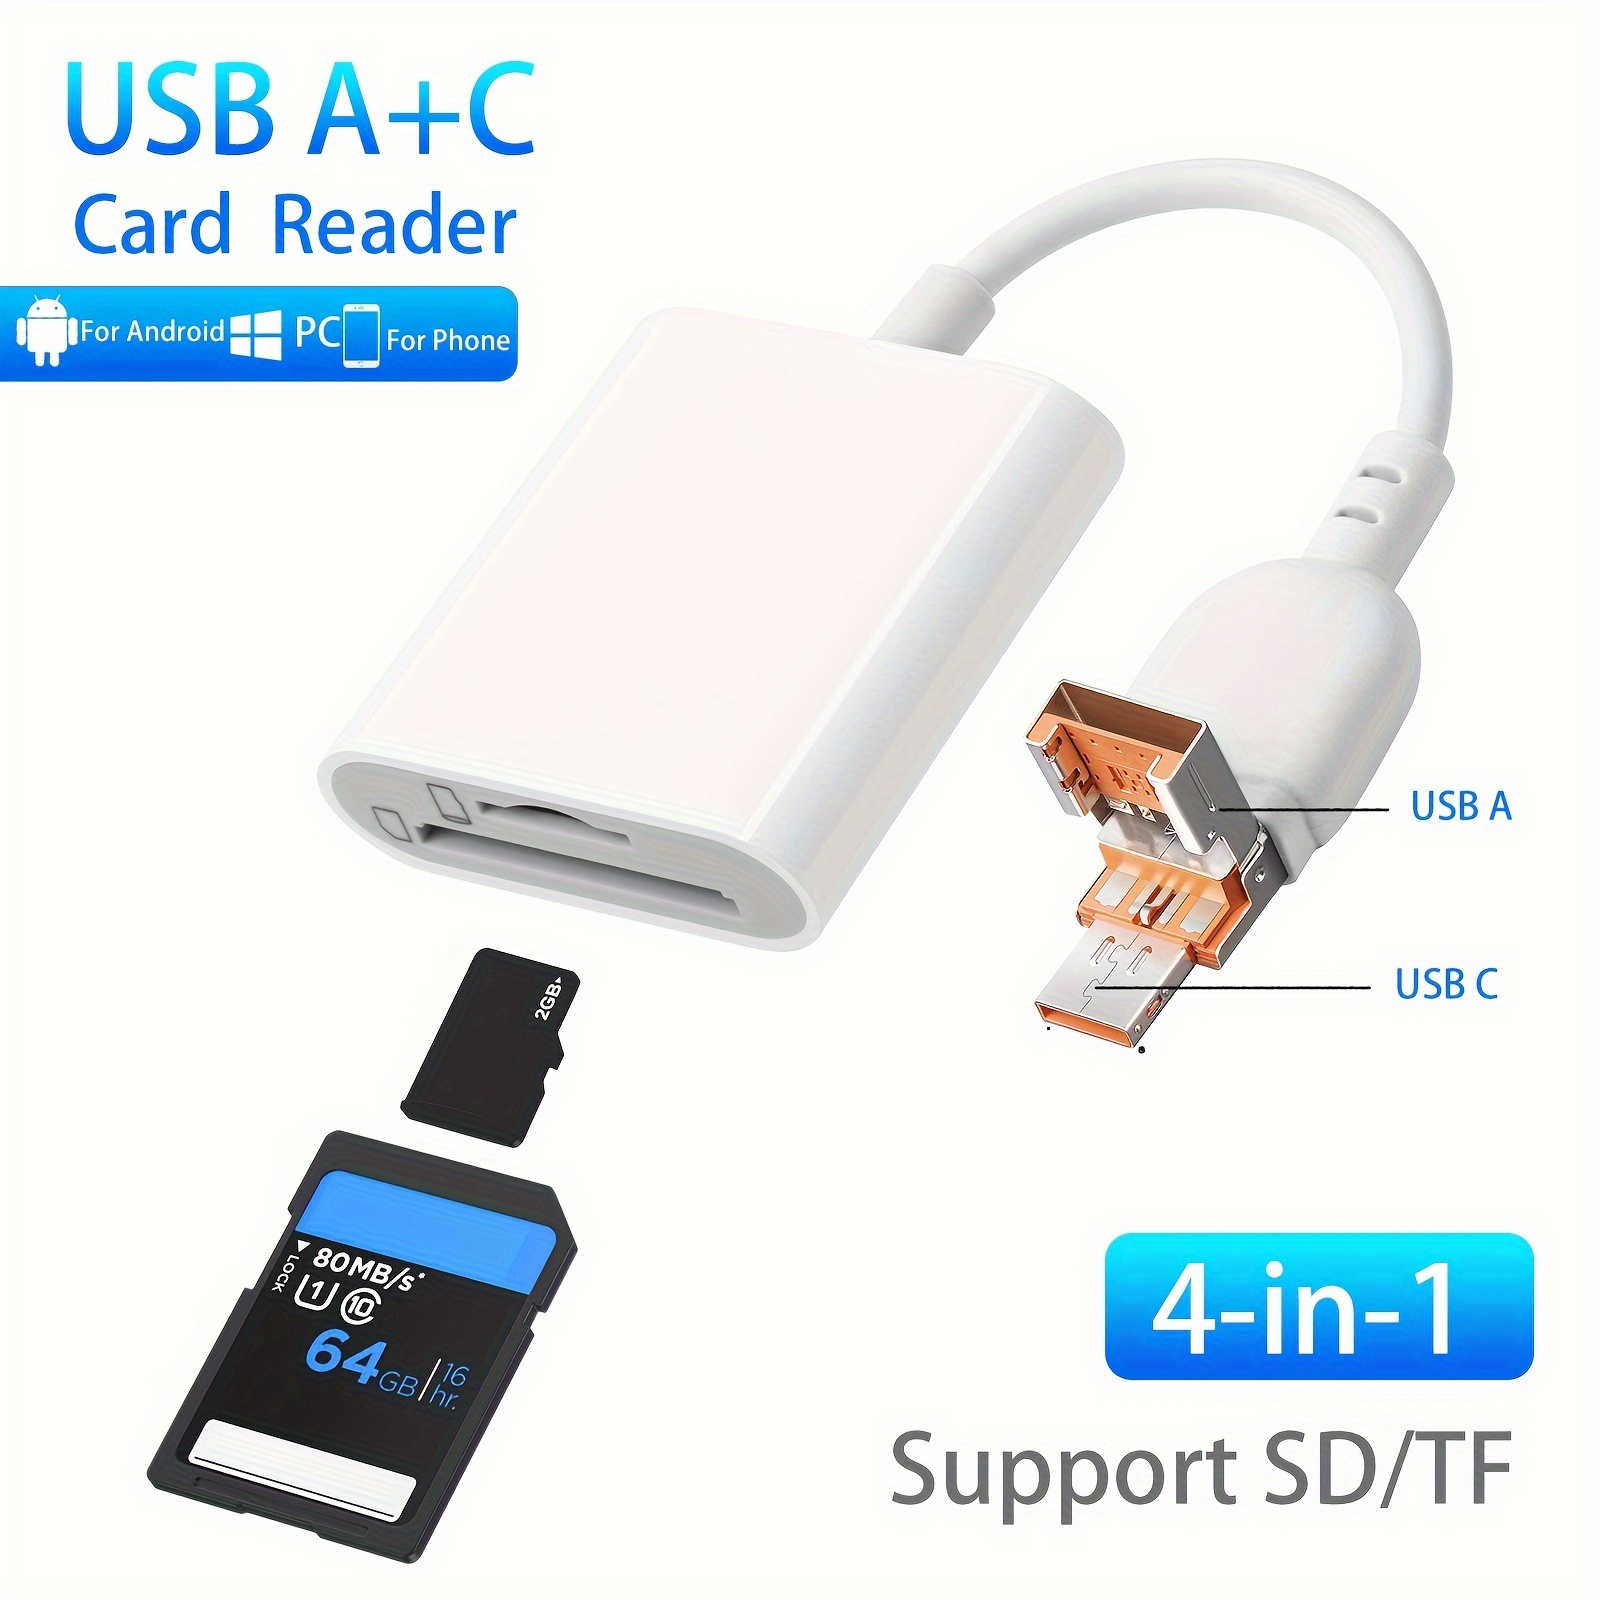 USB 3.0 Lecteur Cartes SD, USB C-Thunderbolt 3 Lecteur Carte SD